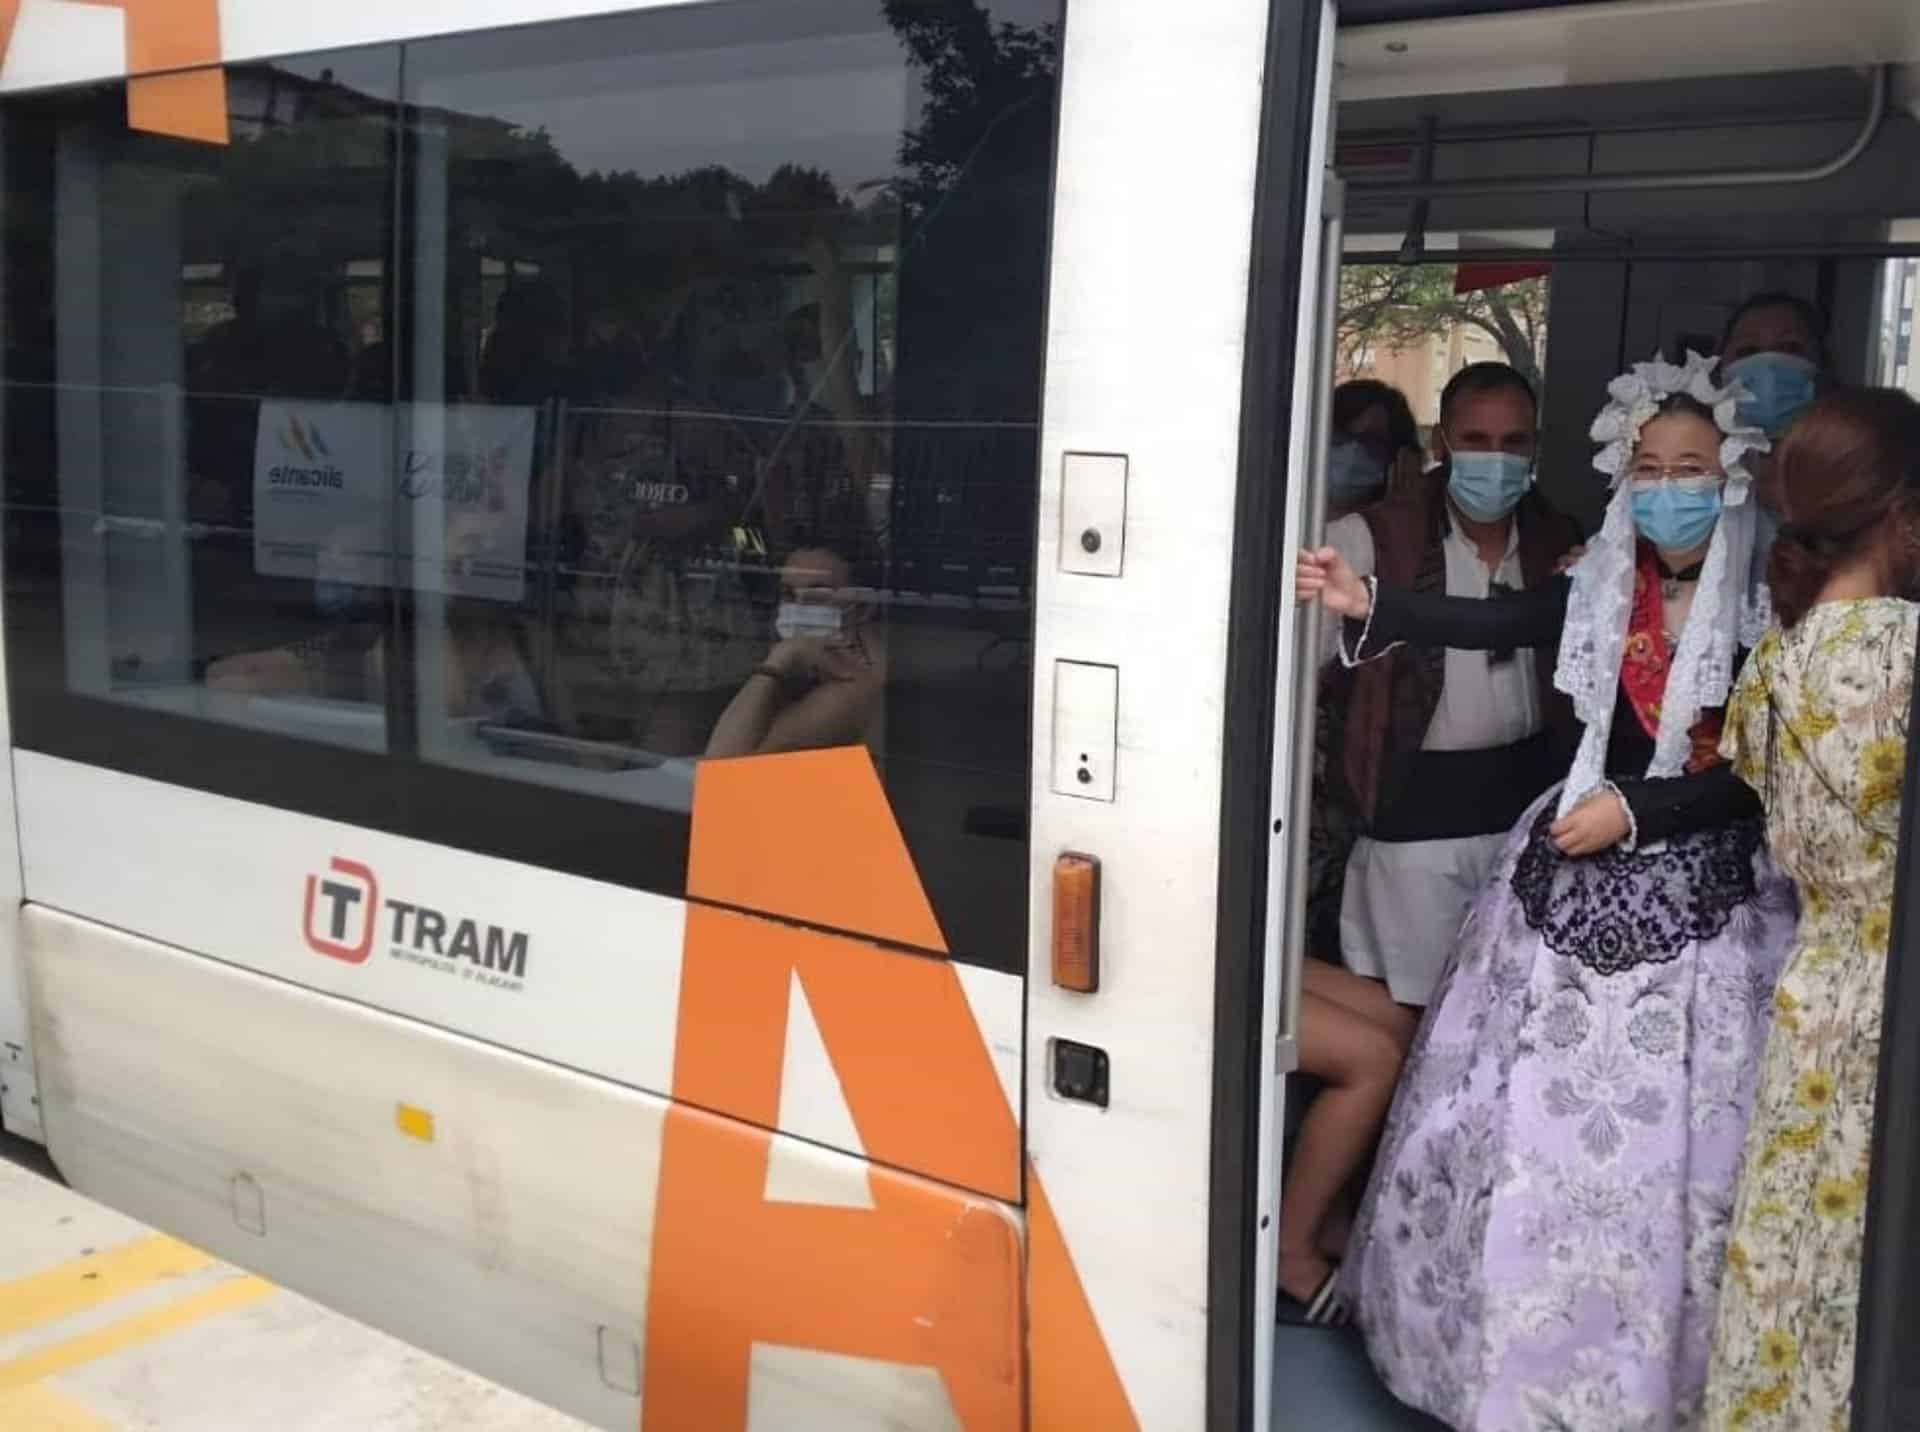 El Tram inicia el servicio ininterrumpido de Hogueras, que ofertará 1,4 millones de plazas hasta el 25